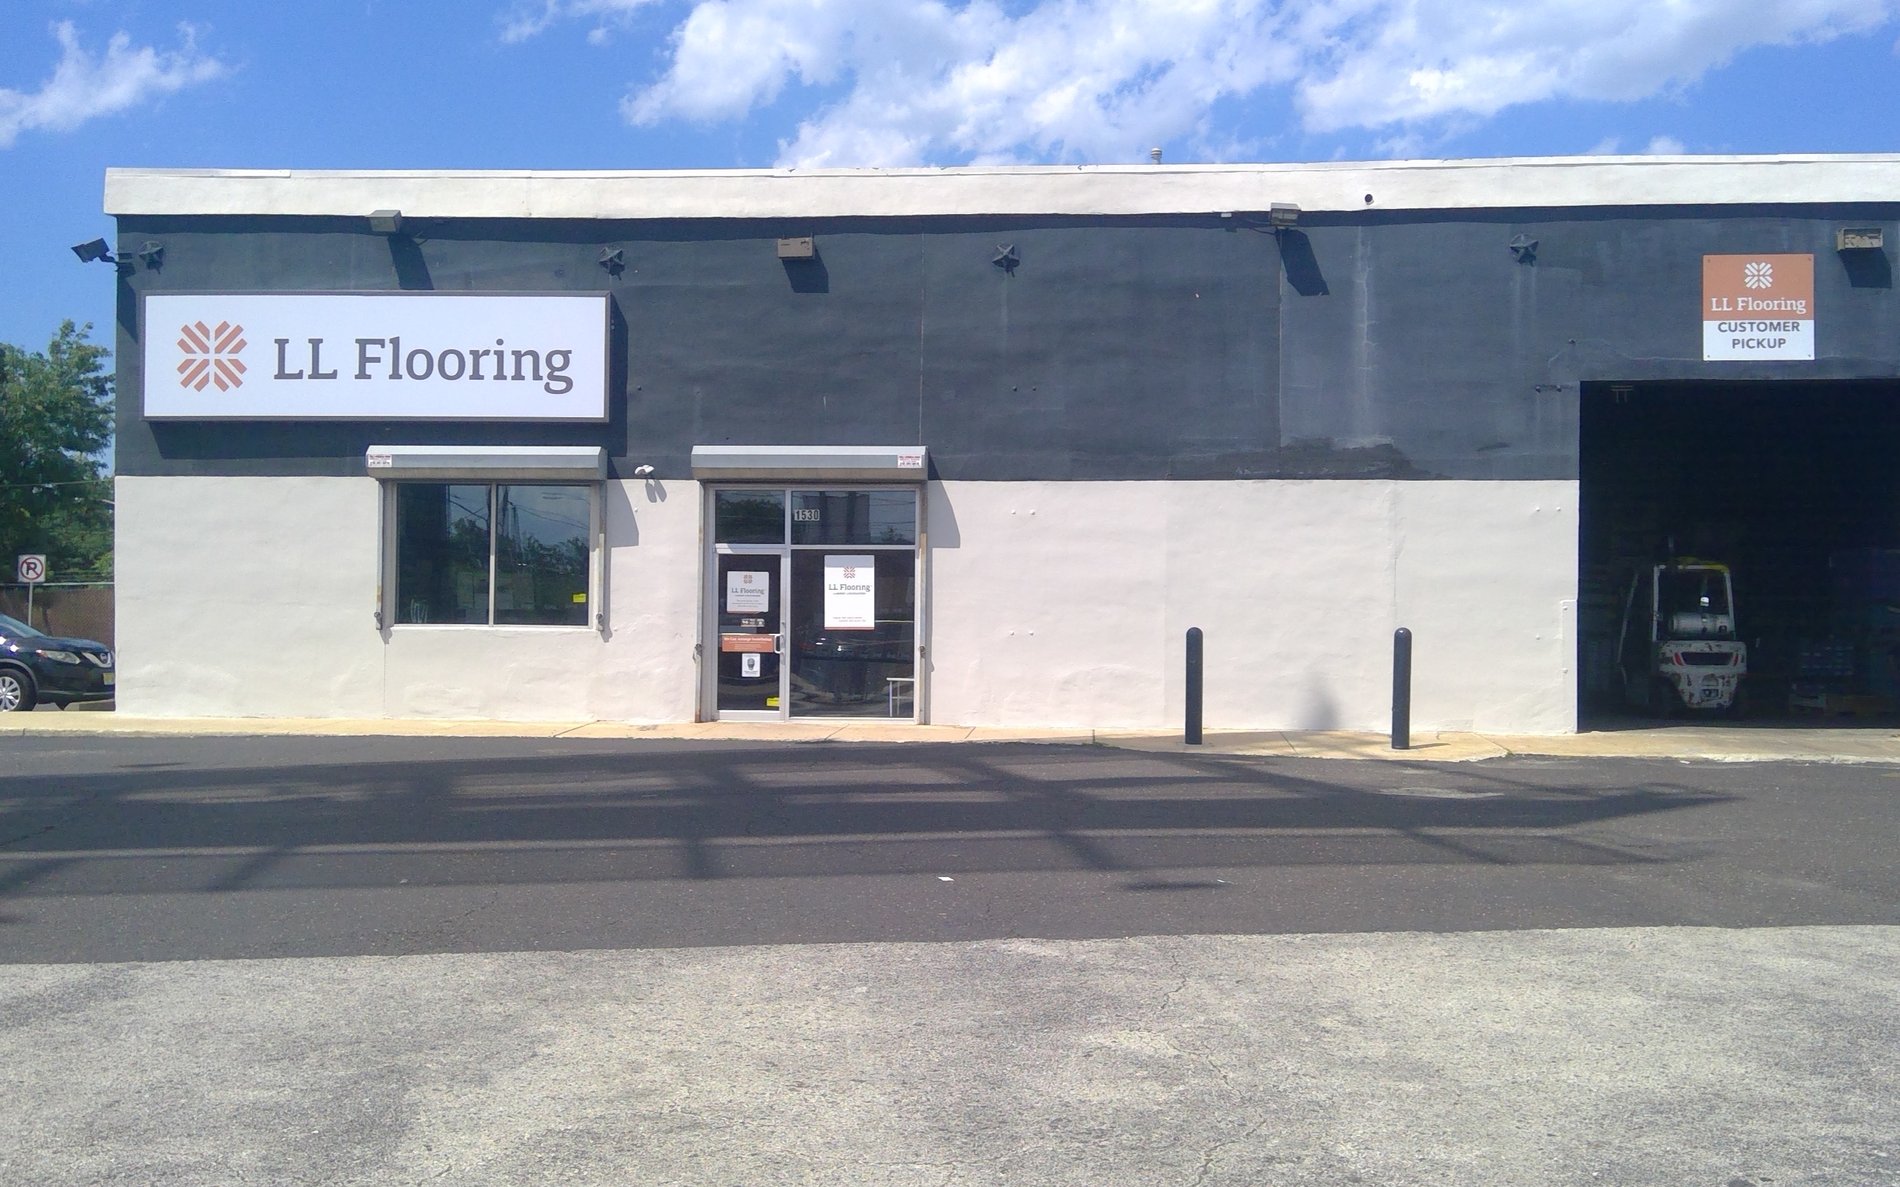 LL Flooring #1344 Philadelphia | 1530 South Columbus Blvd | Storefront